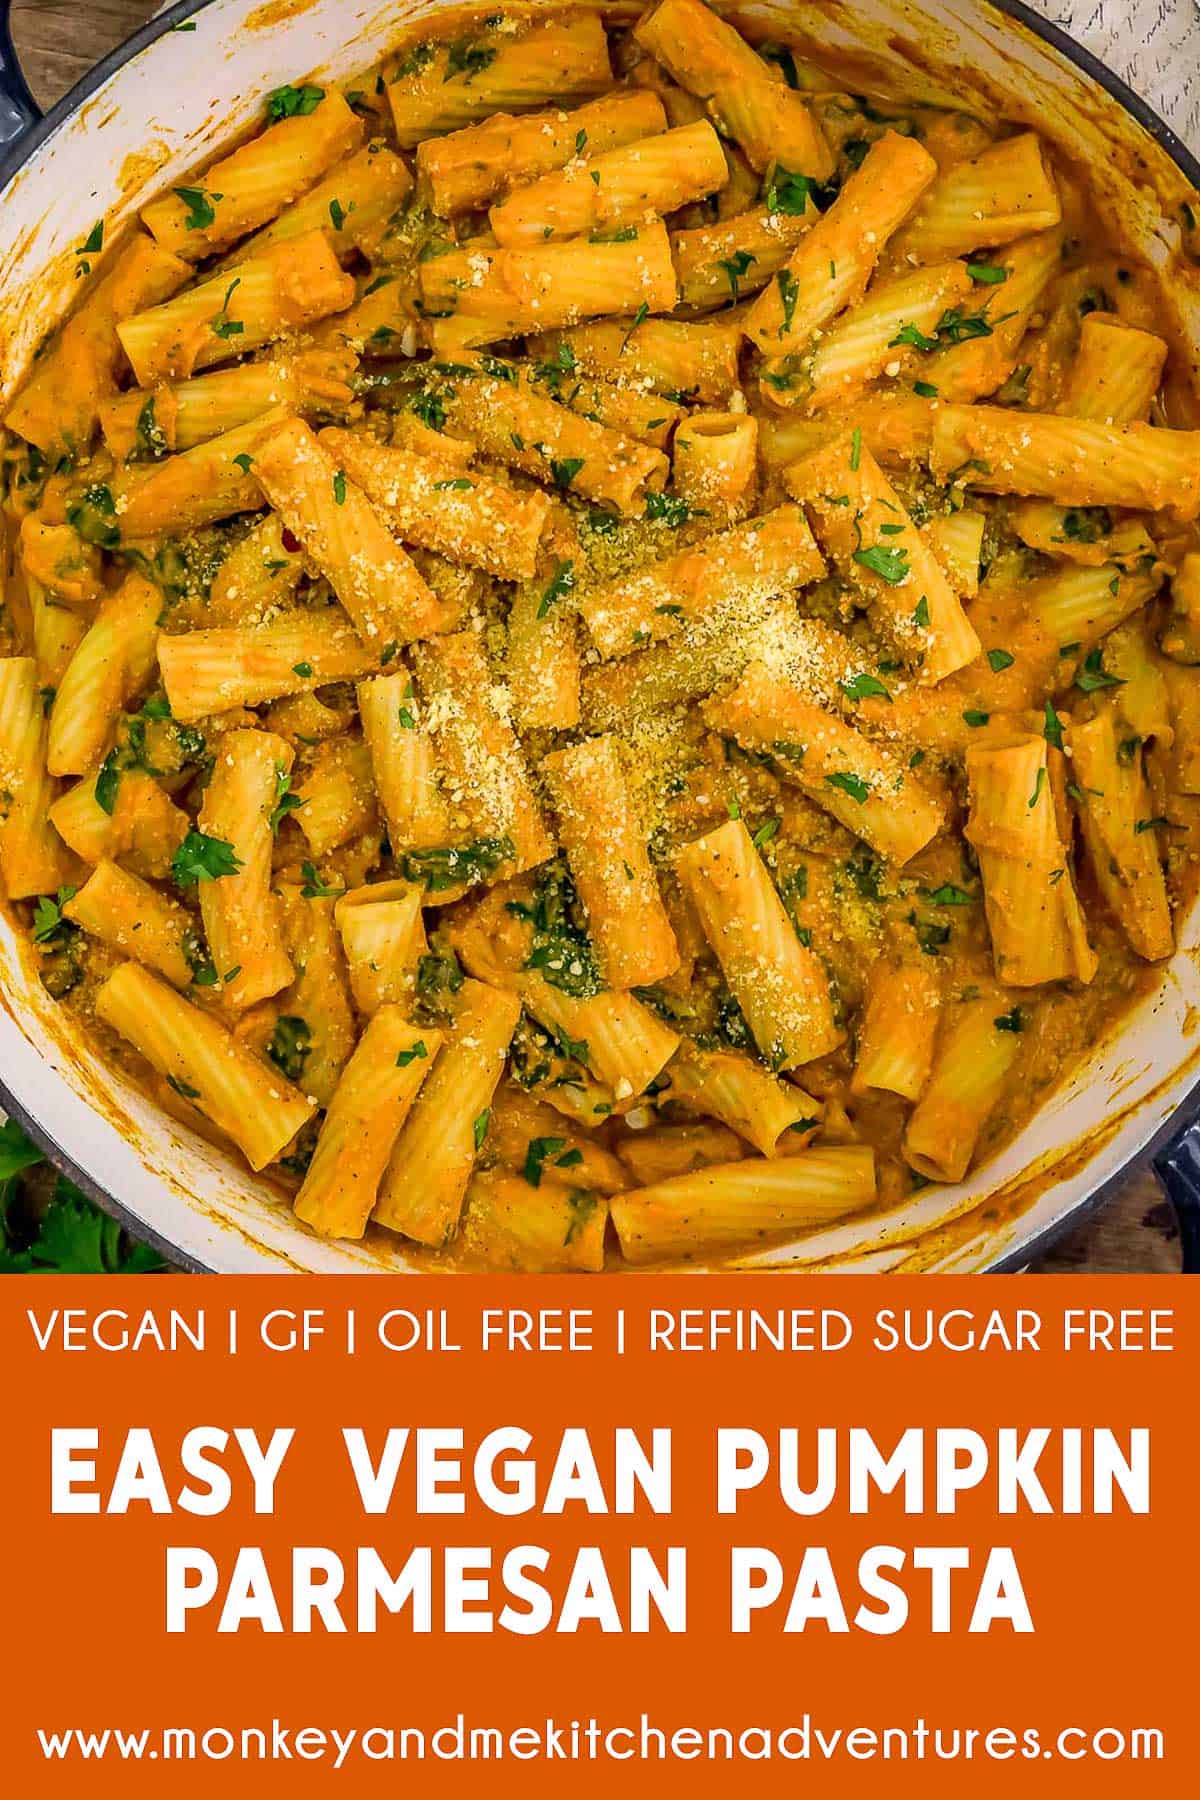 Easy Vegan Pumpkin Parmesan Pasta with text description